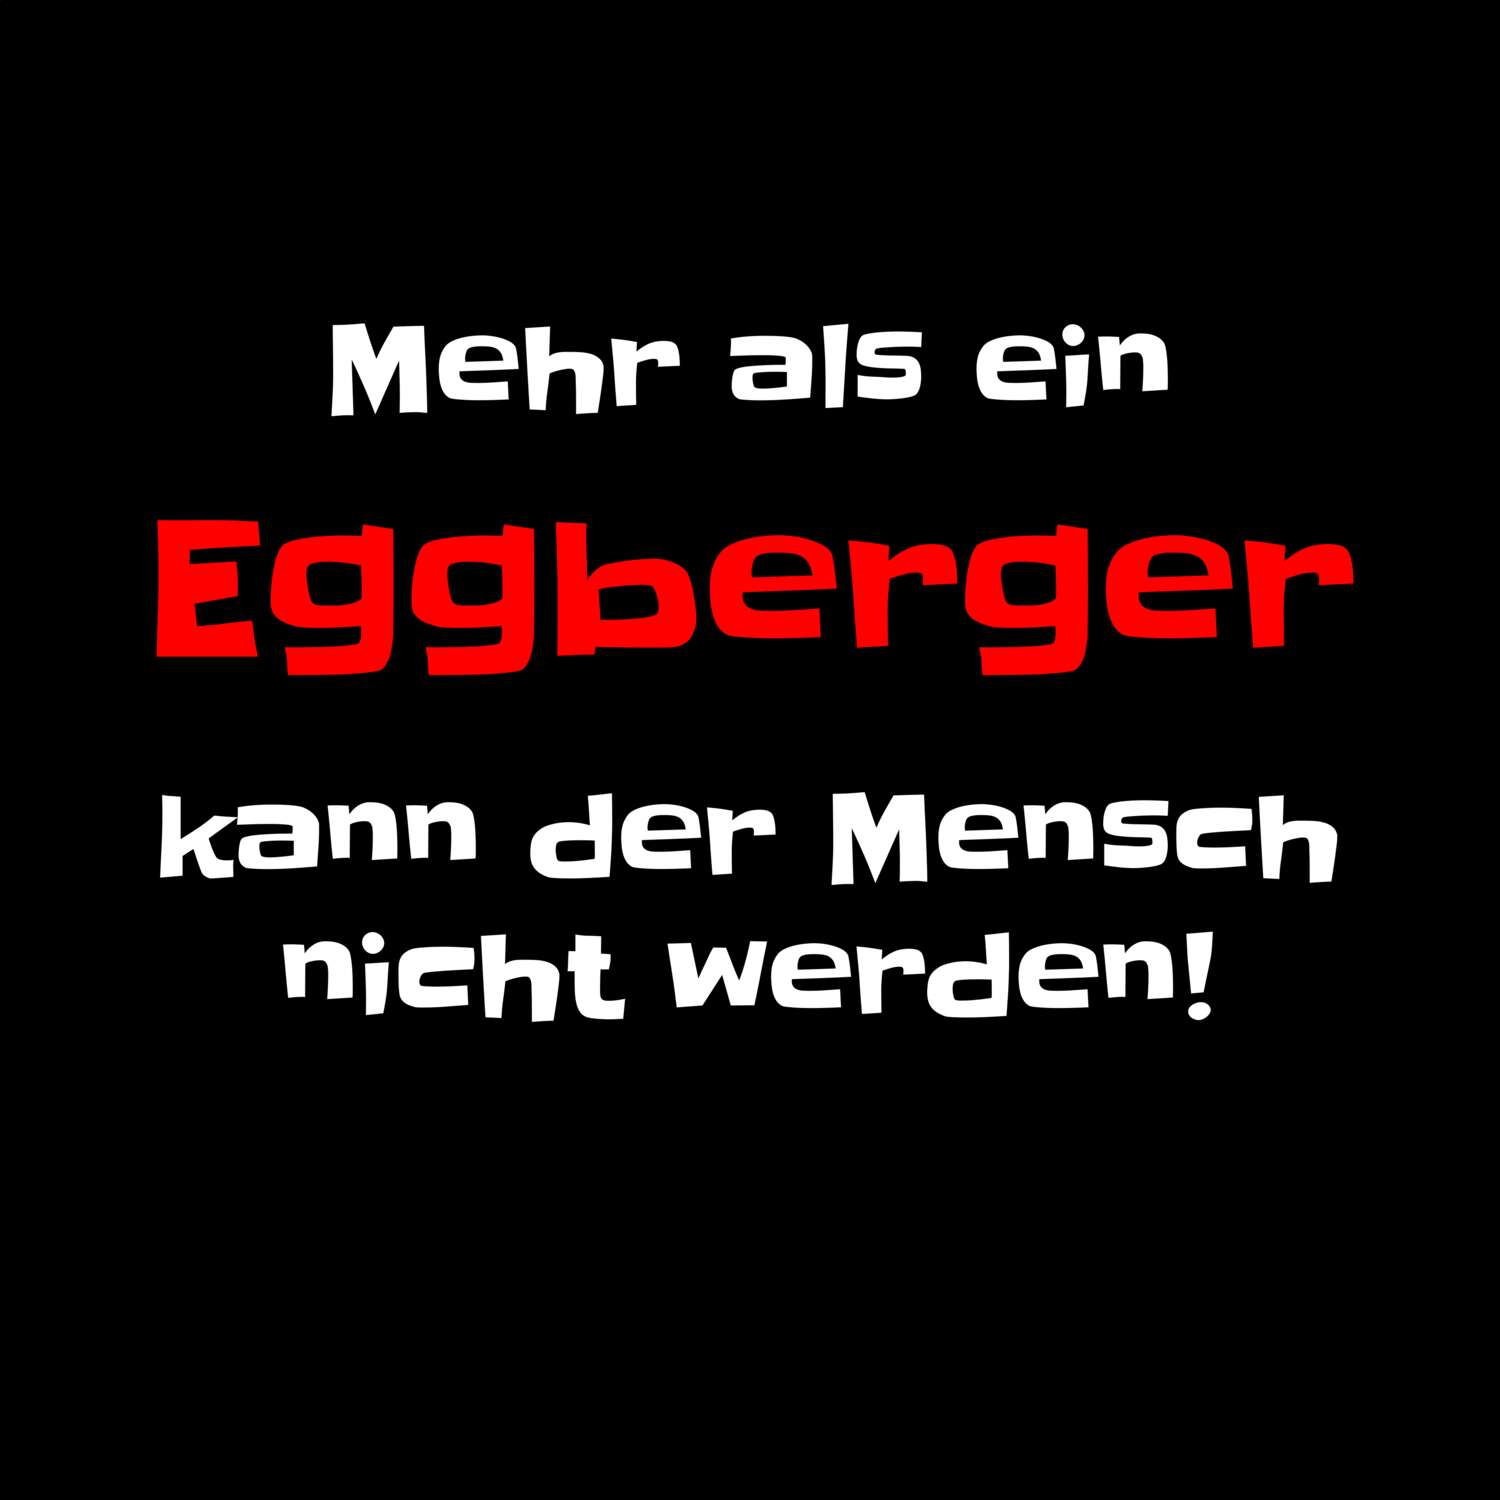 Eggberg T-Shirt »Mehr als ein«